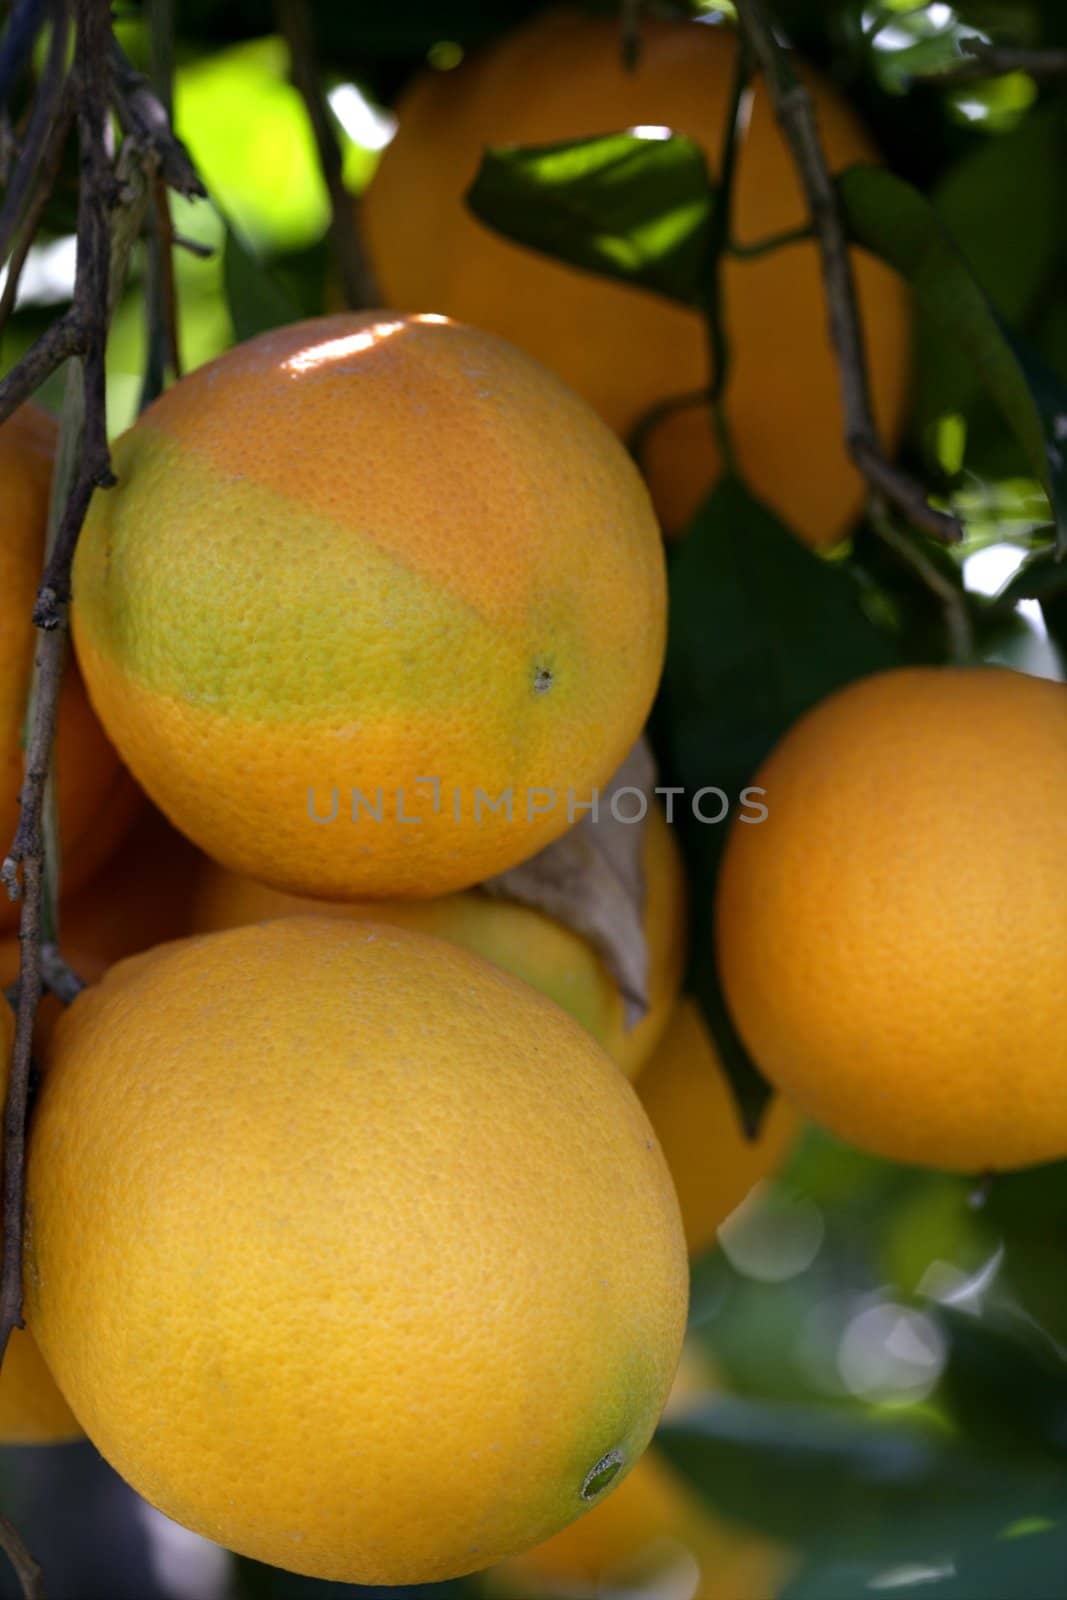 Orange trees with oranges by lunamarina